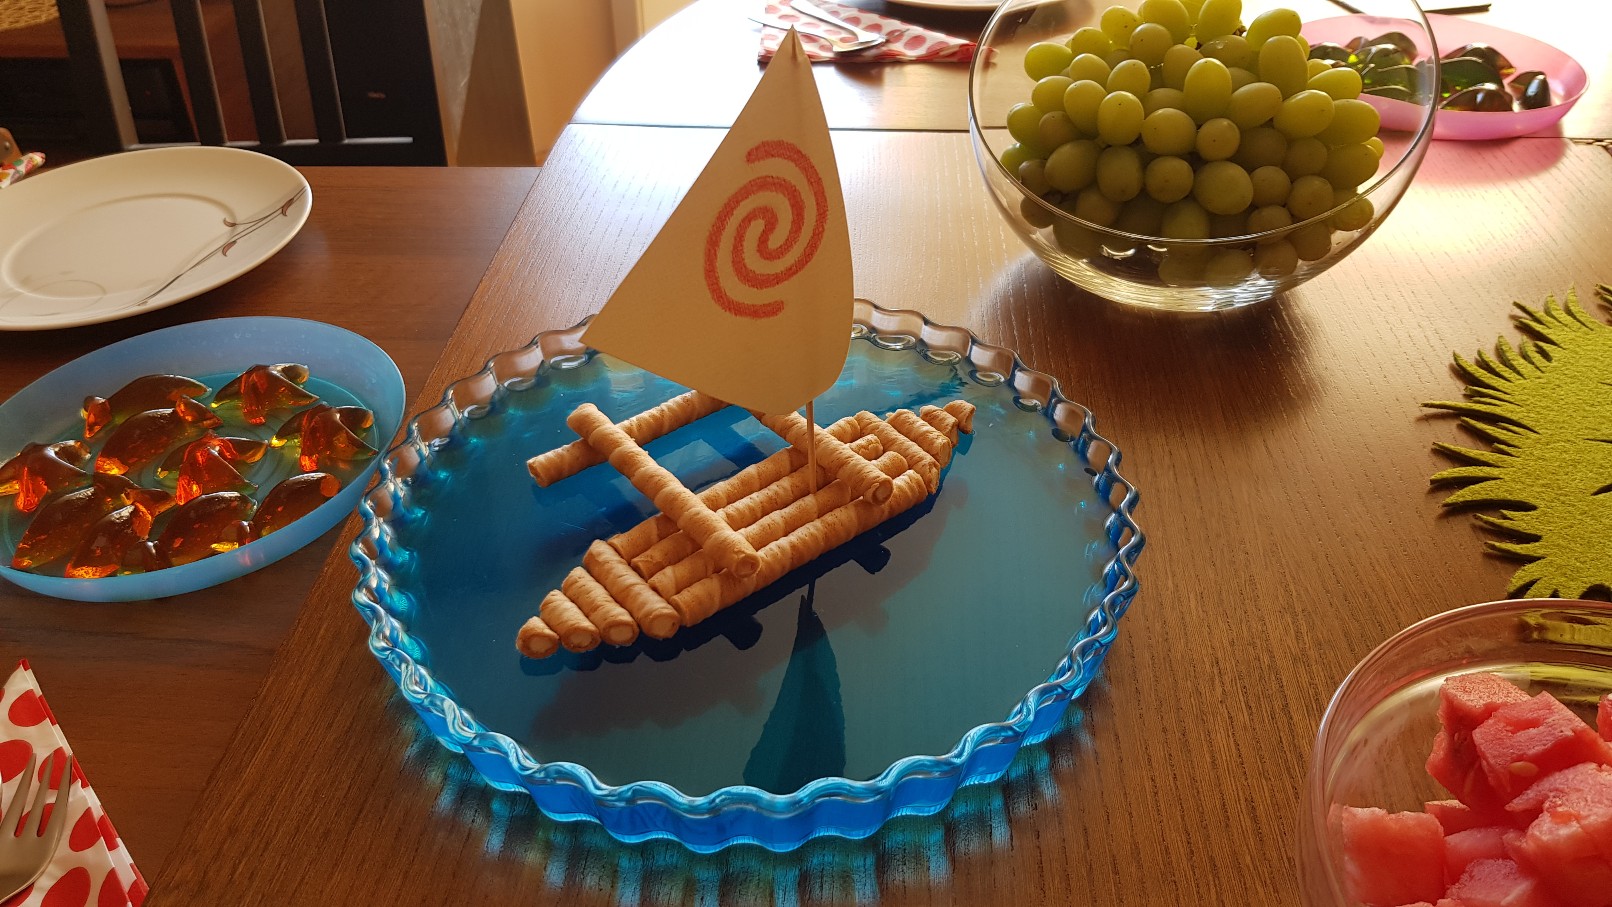 moana vaiana birthday party food ideas blue jelly boat